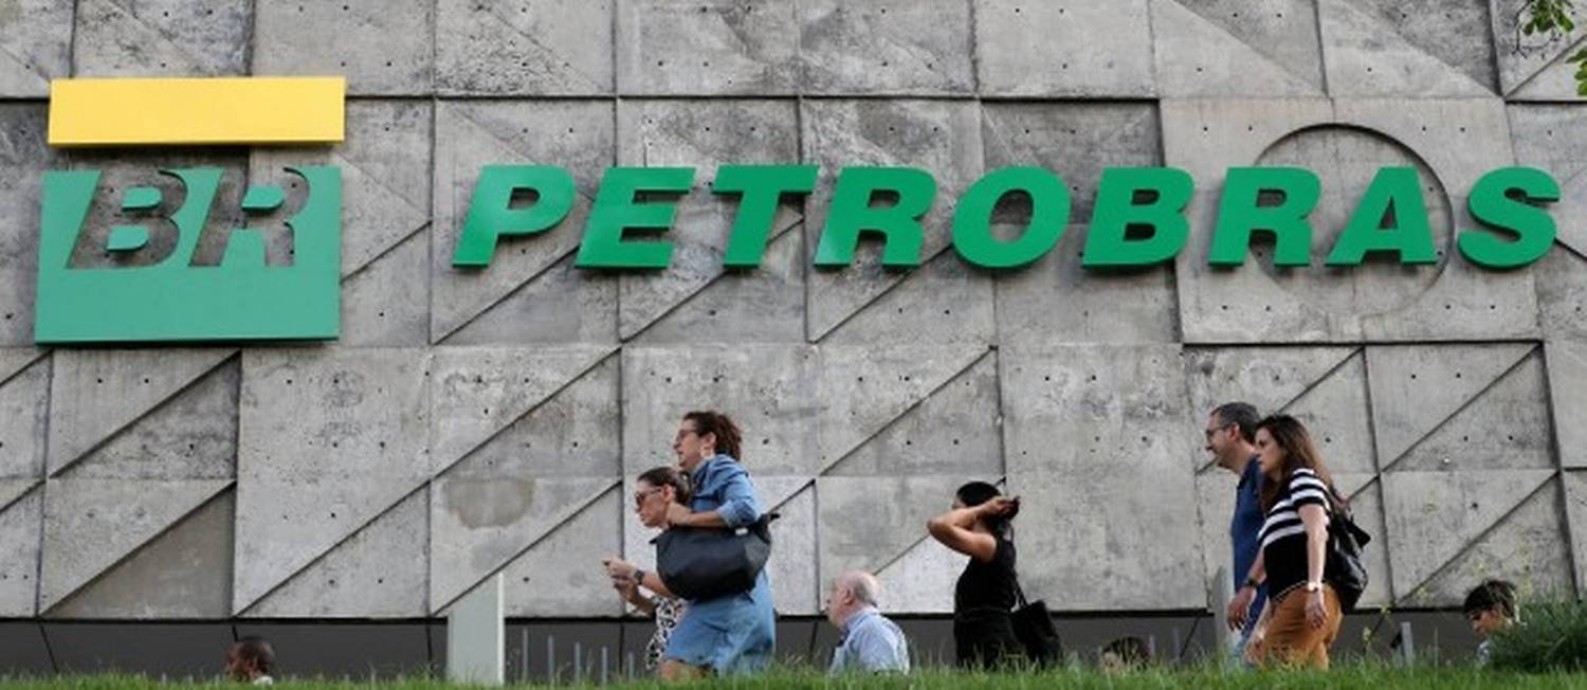 Concurso da Petrobras com mais de 700 vagas e salários acima de R$ 11 mil encerra hoje inscrições